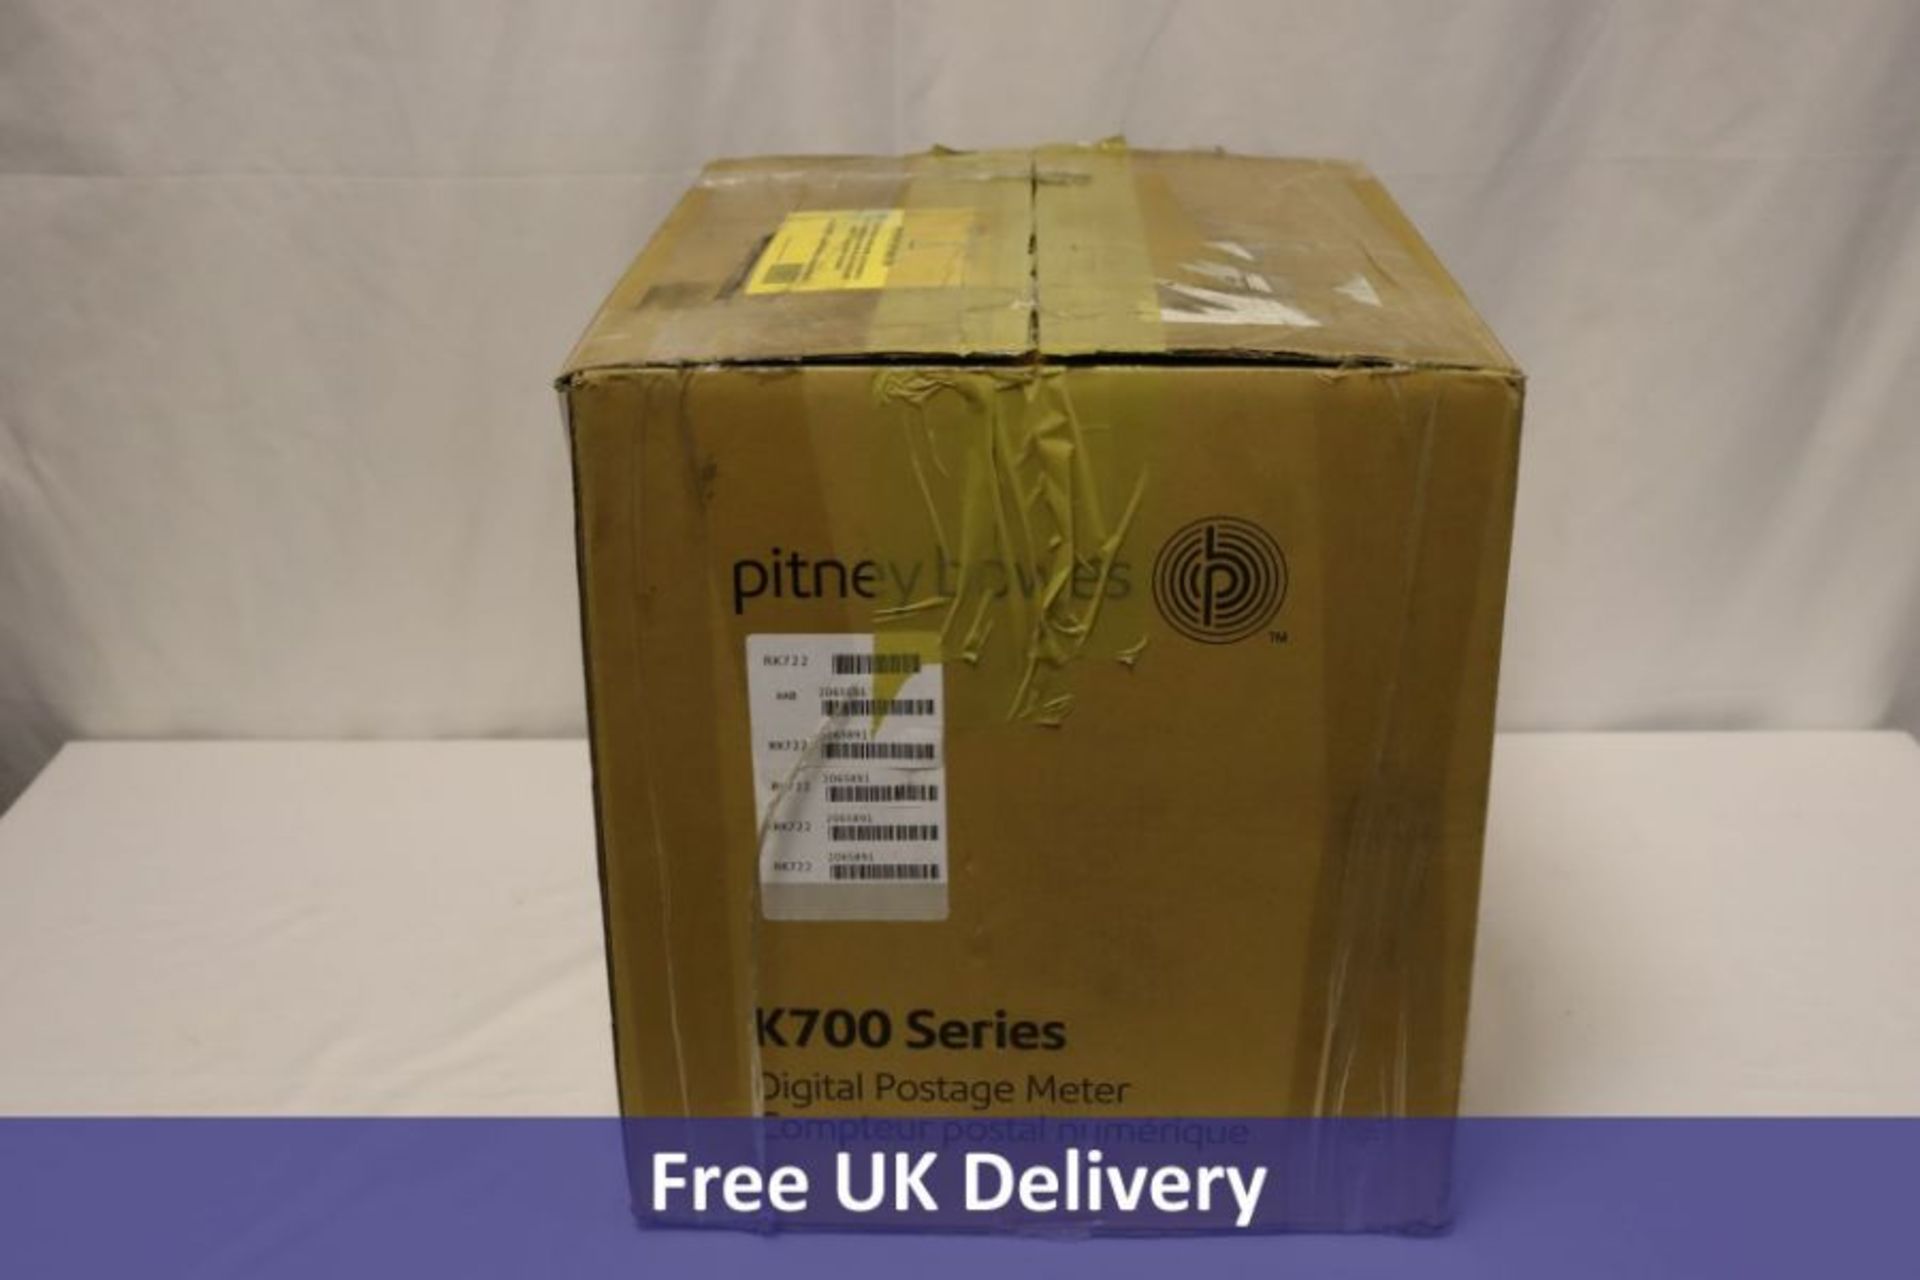 Pitney Bowes K700 Series Digital Postage Meter. Used